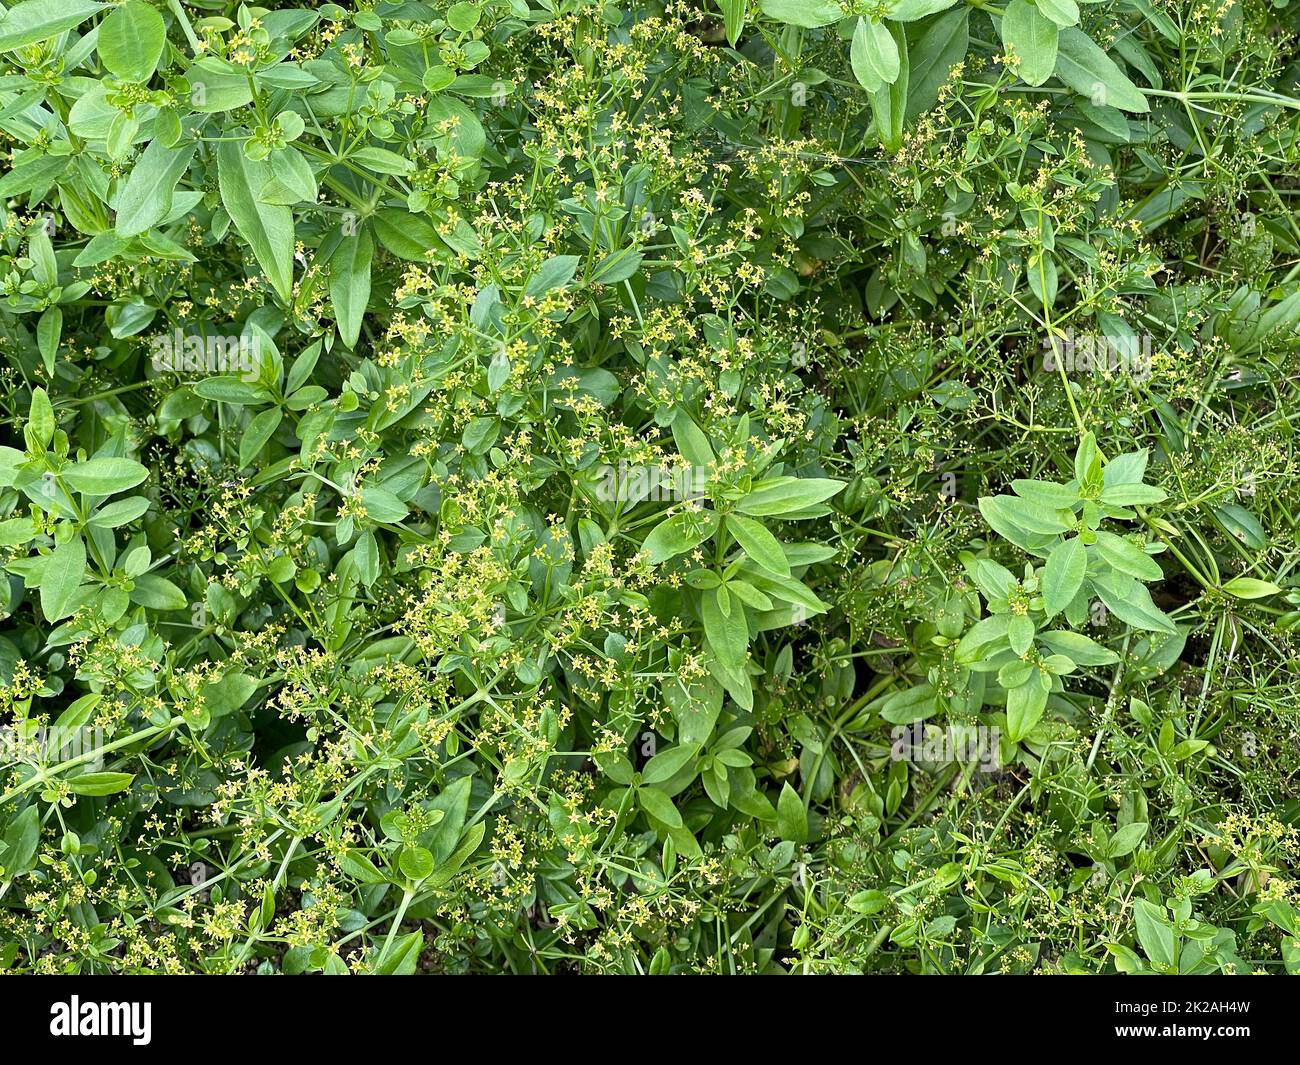 Faerberroete, Krapp, Rubia Tinctorum, ist eine wichtige Heilpflanze mit gelb-gruenen Blueten und wird viel in der Medizin verwendet. Faerberroete, mad Stock Photo